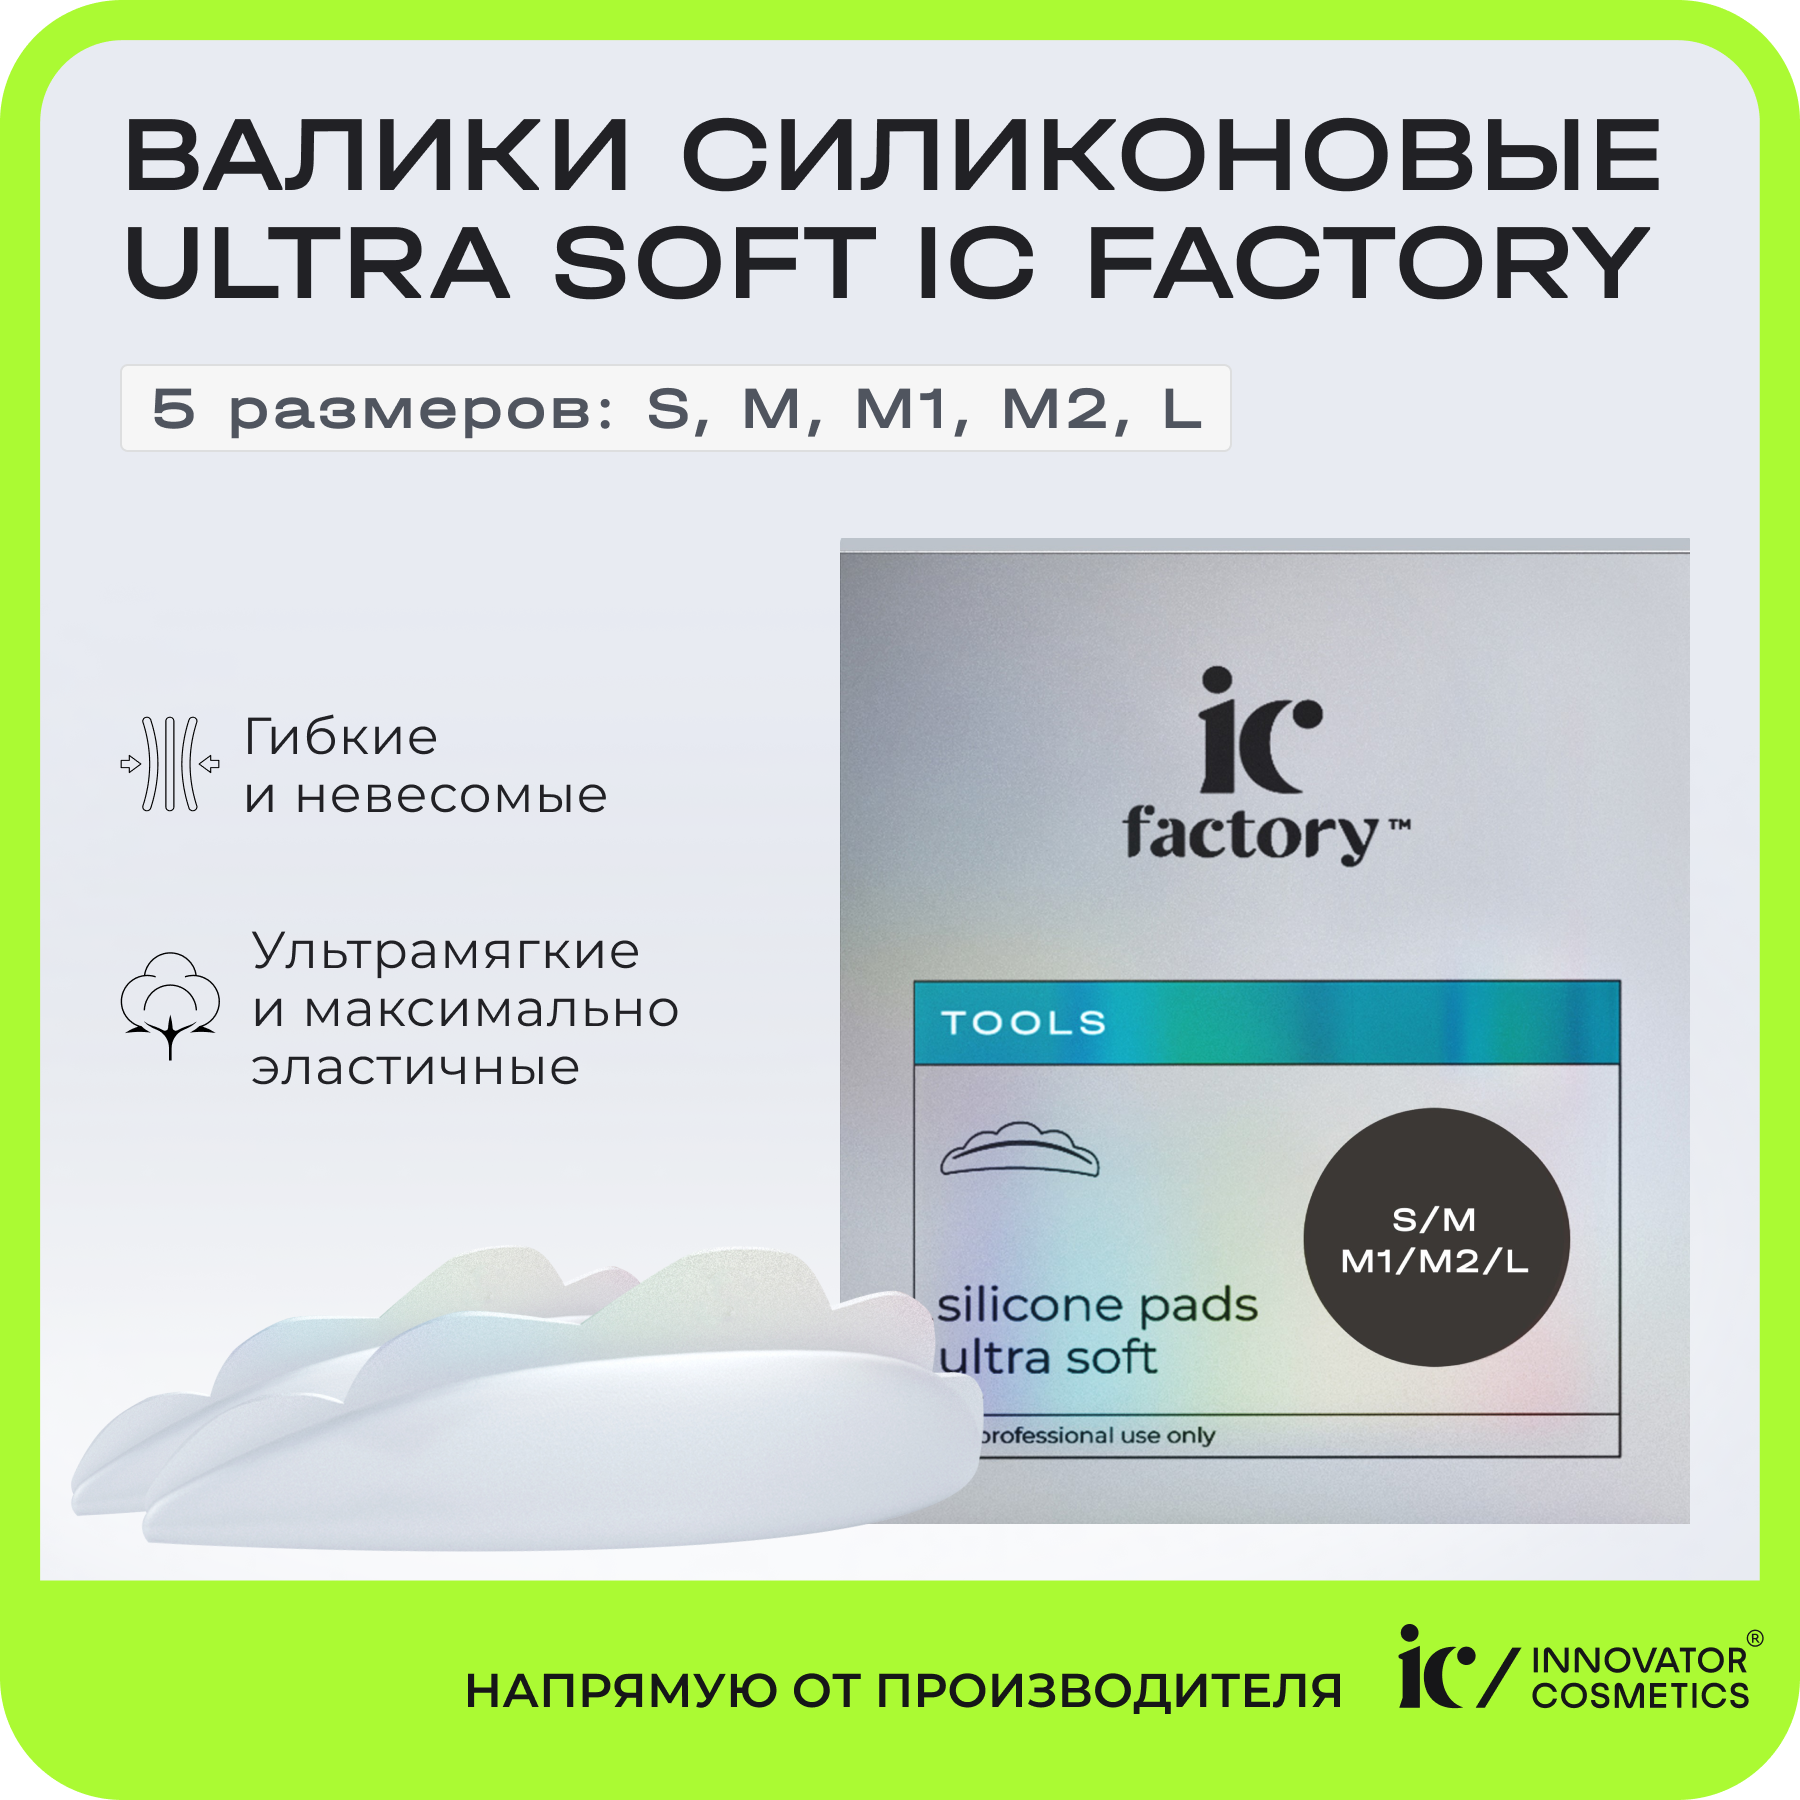 Набор валиков силиконовых Innovator Cosmetics Ultra Soft IC FACTORY, 5 размеров innovator cosmetics набор валиков силиконовых 5 размеров ultra soft ic factory